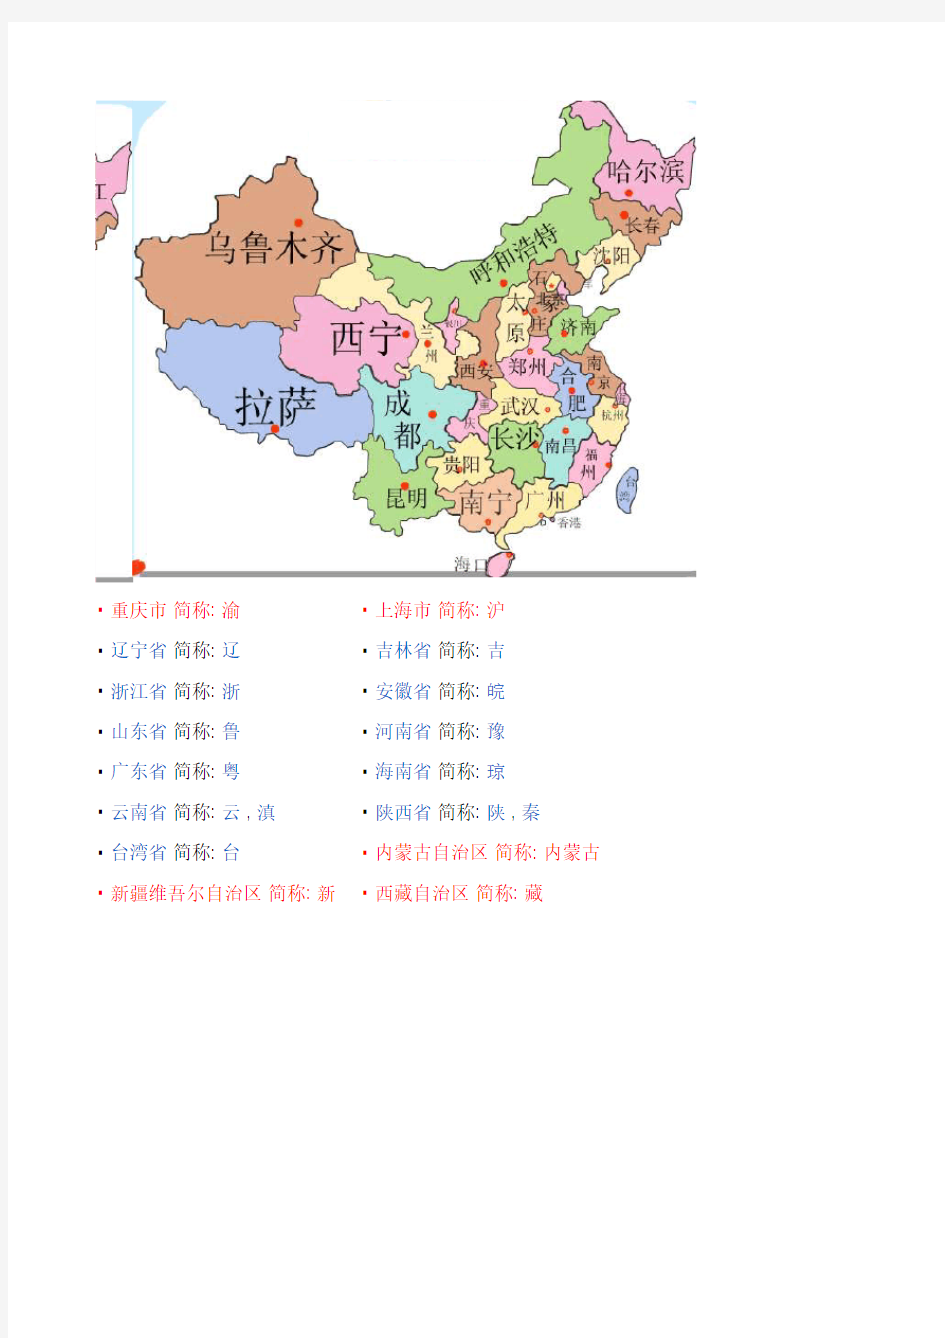 中国省份地图及简称